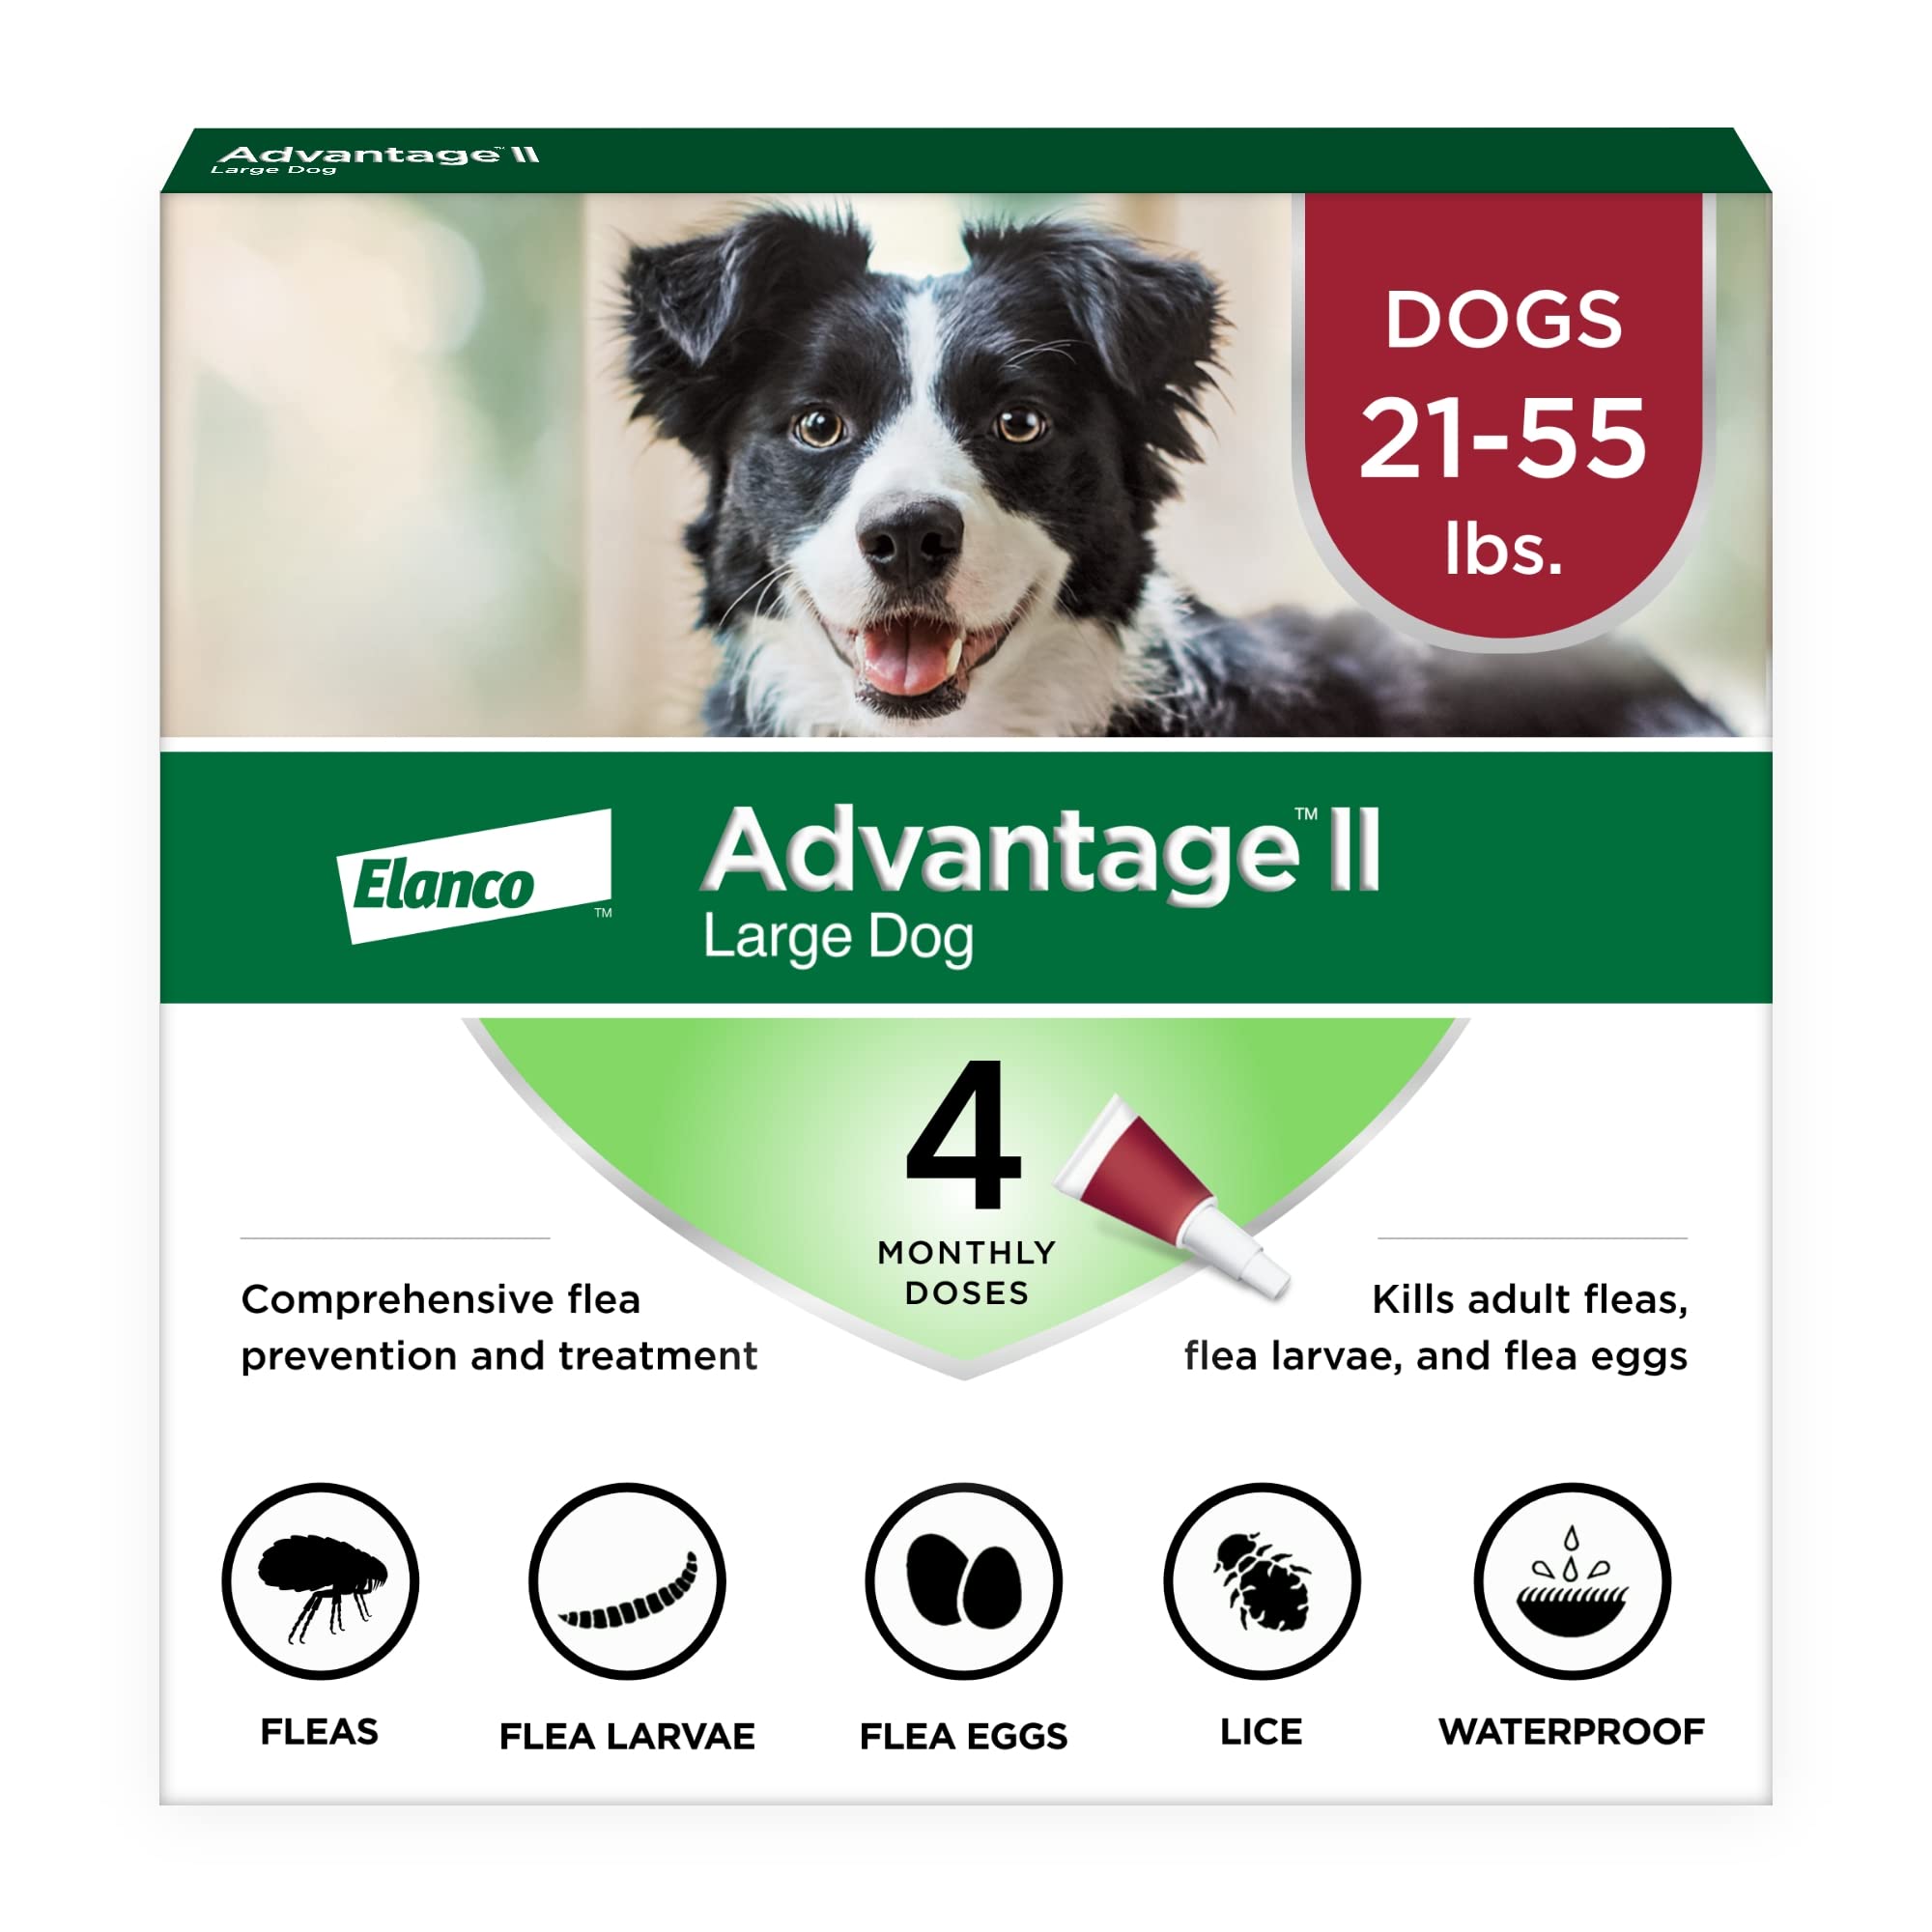 Advantage II 大型犬（21-55磅）跳蚤防治